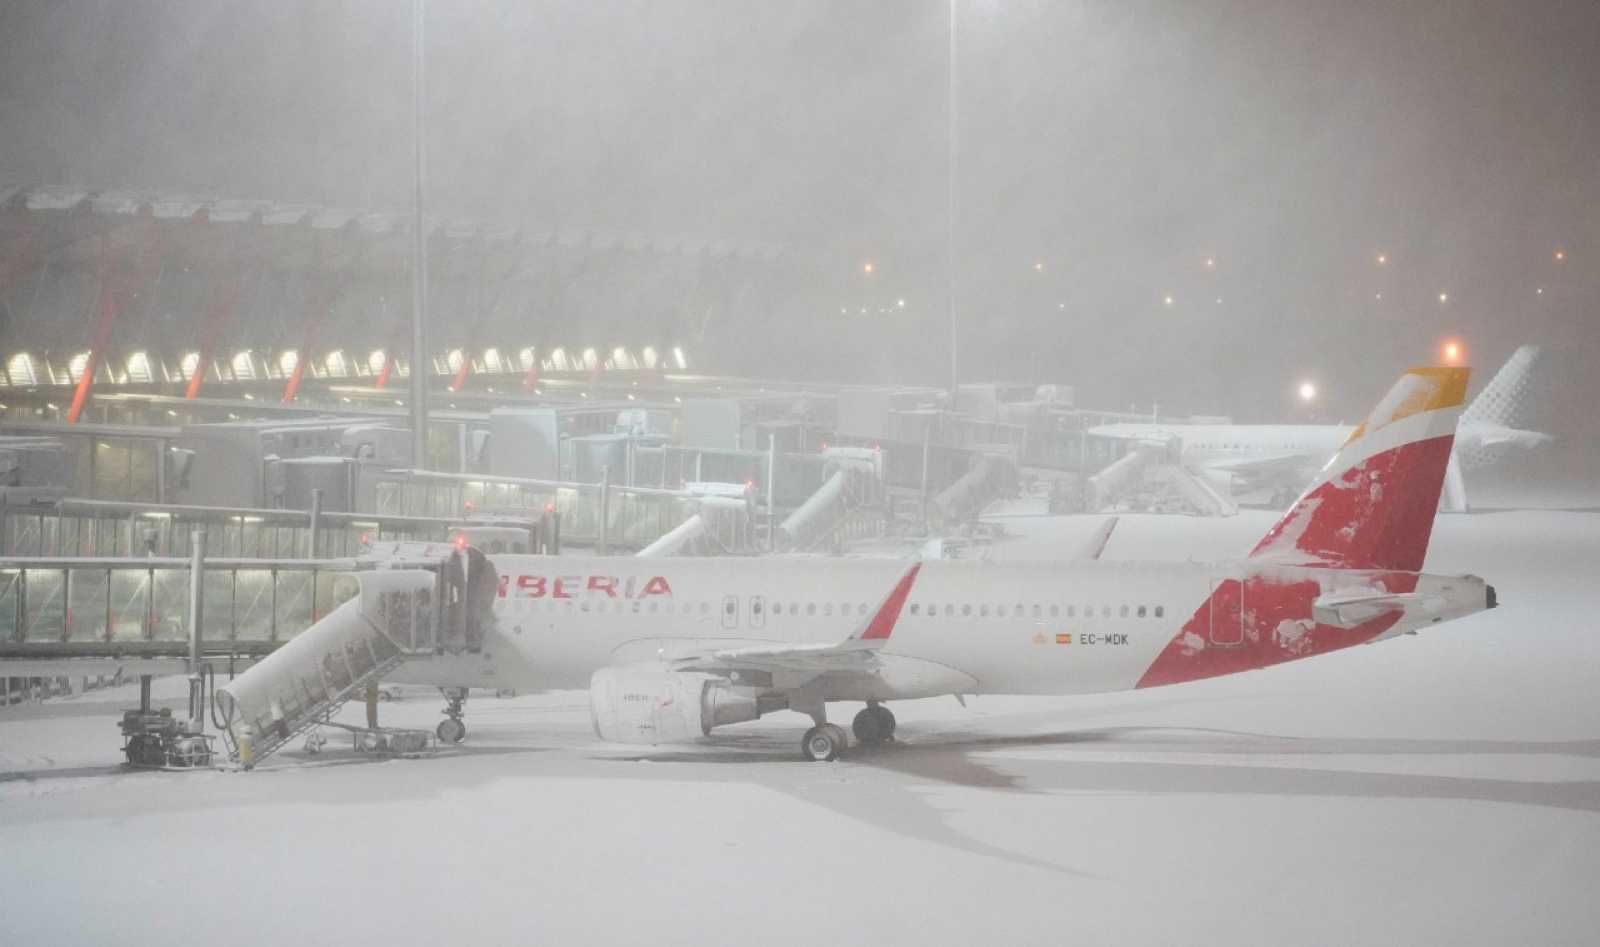 Tormenta de nieve Filomena crea caos en España y obliga cierre del aeropuerto de Madrid